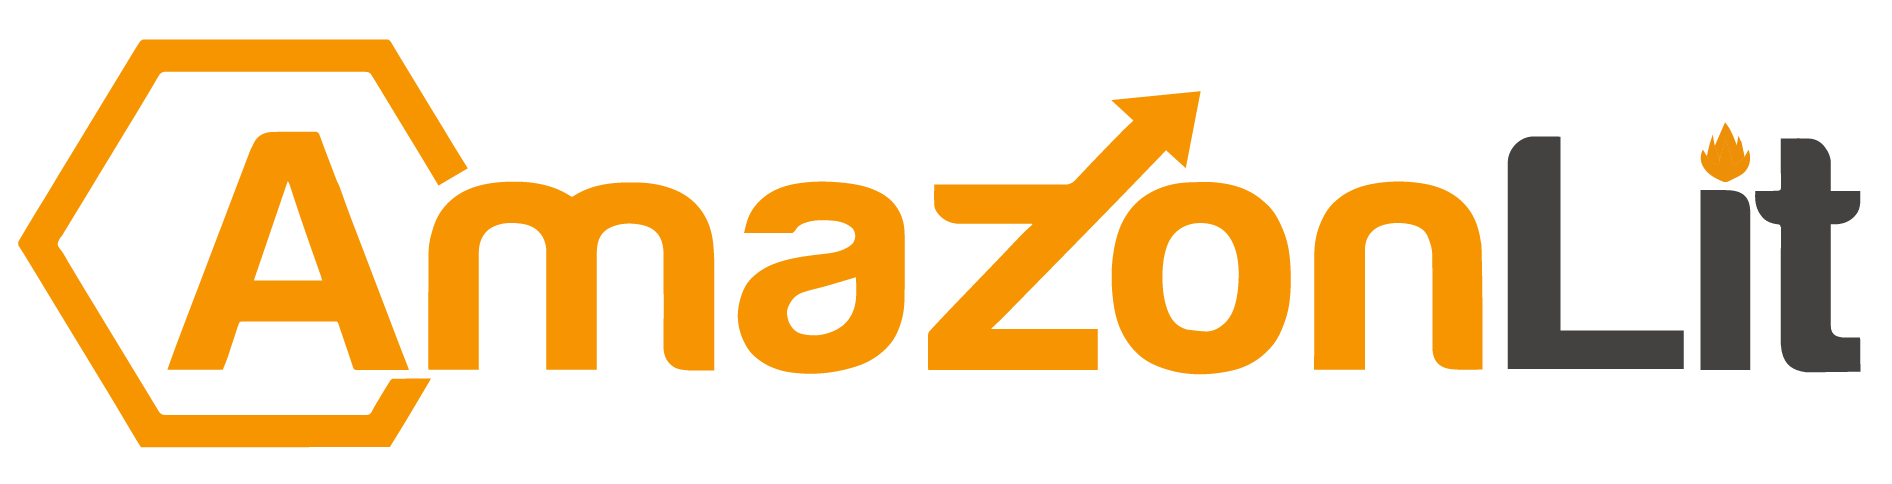 amazon logo transparent background